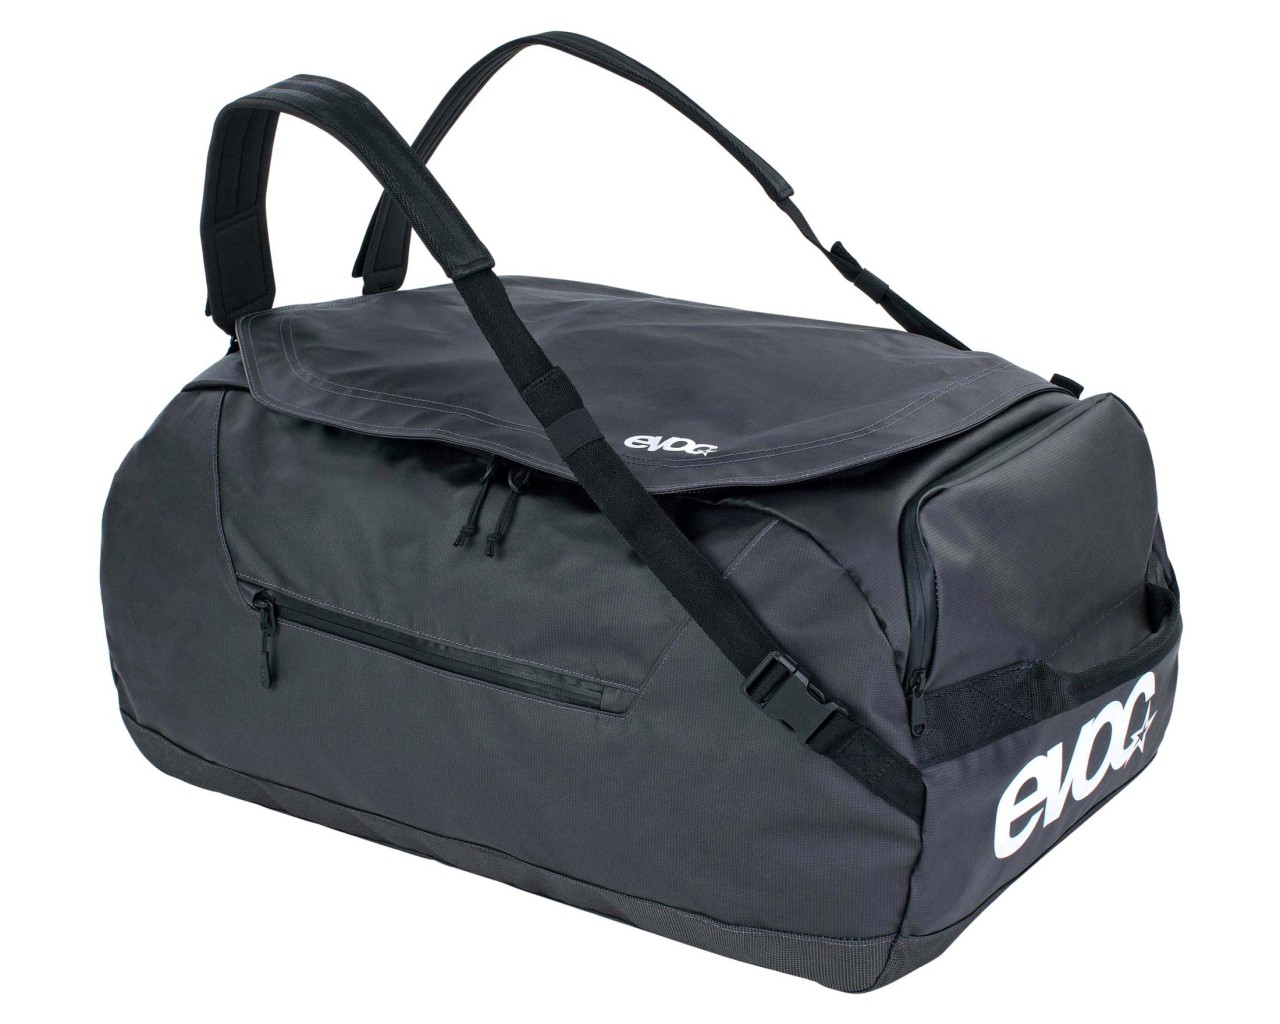 Evoc Duffle Bag 60 Liter Reise- und Rucksacktasche | carbon grey-black